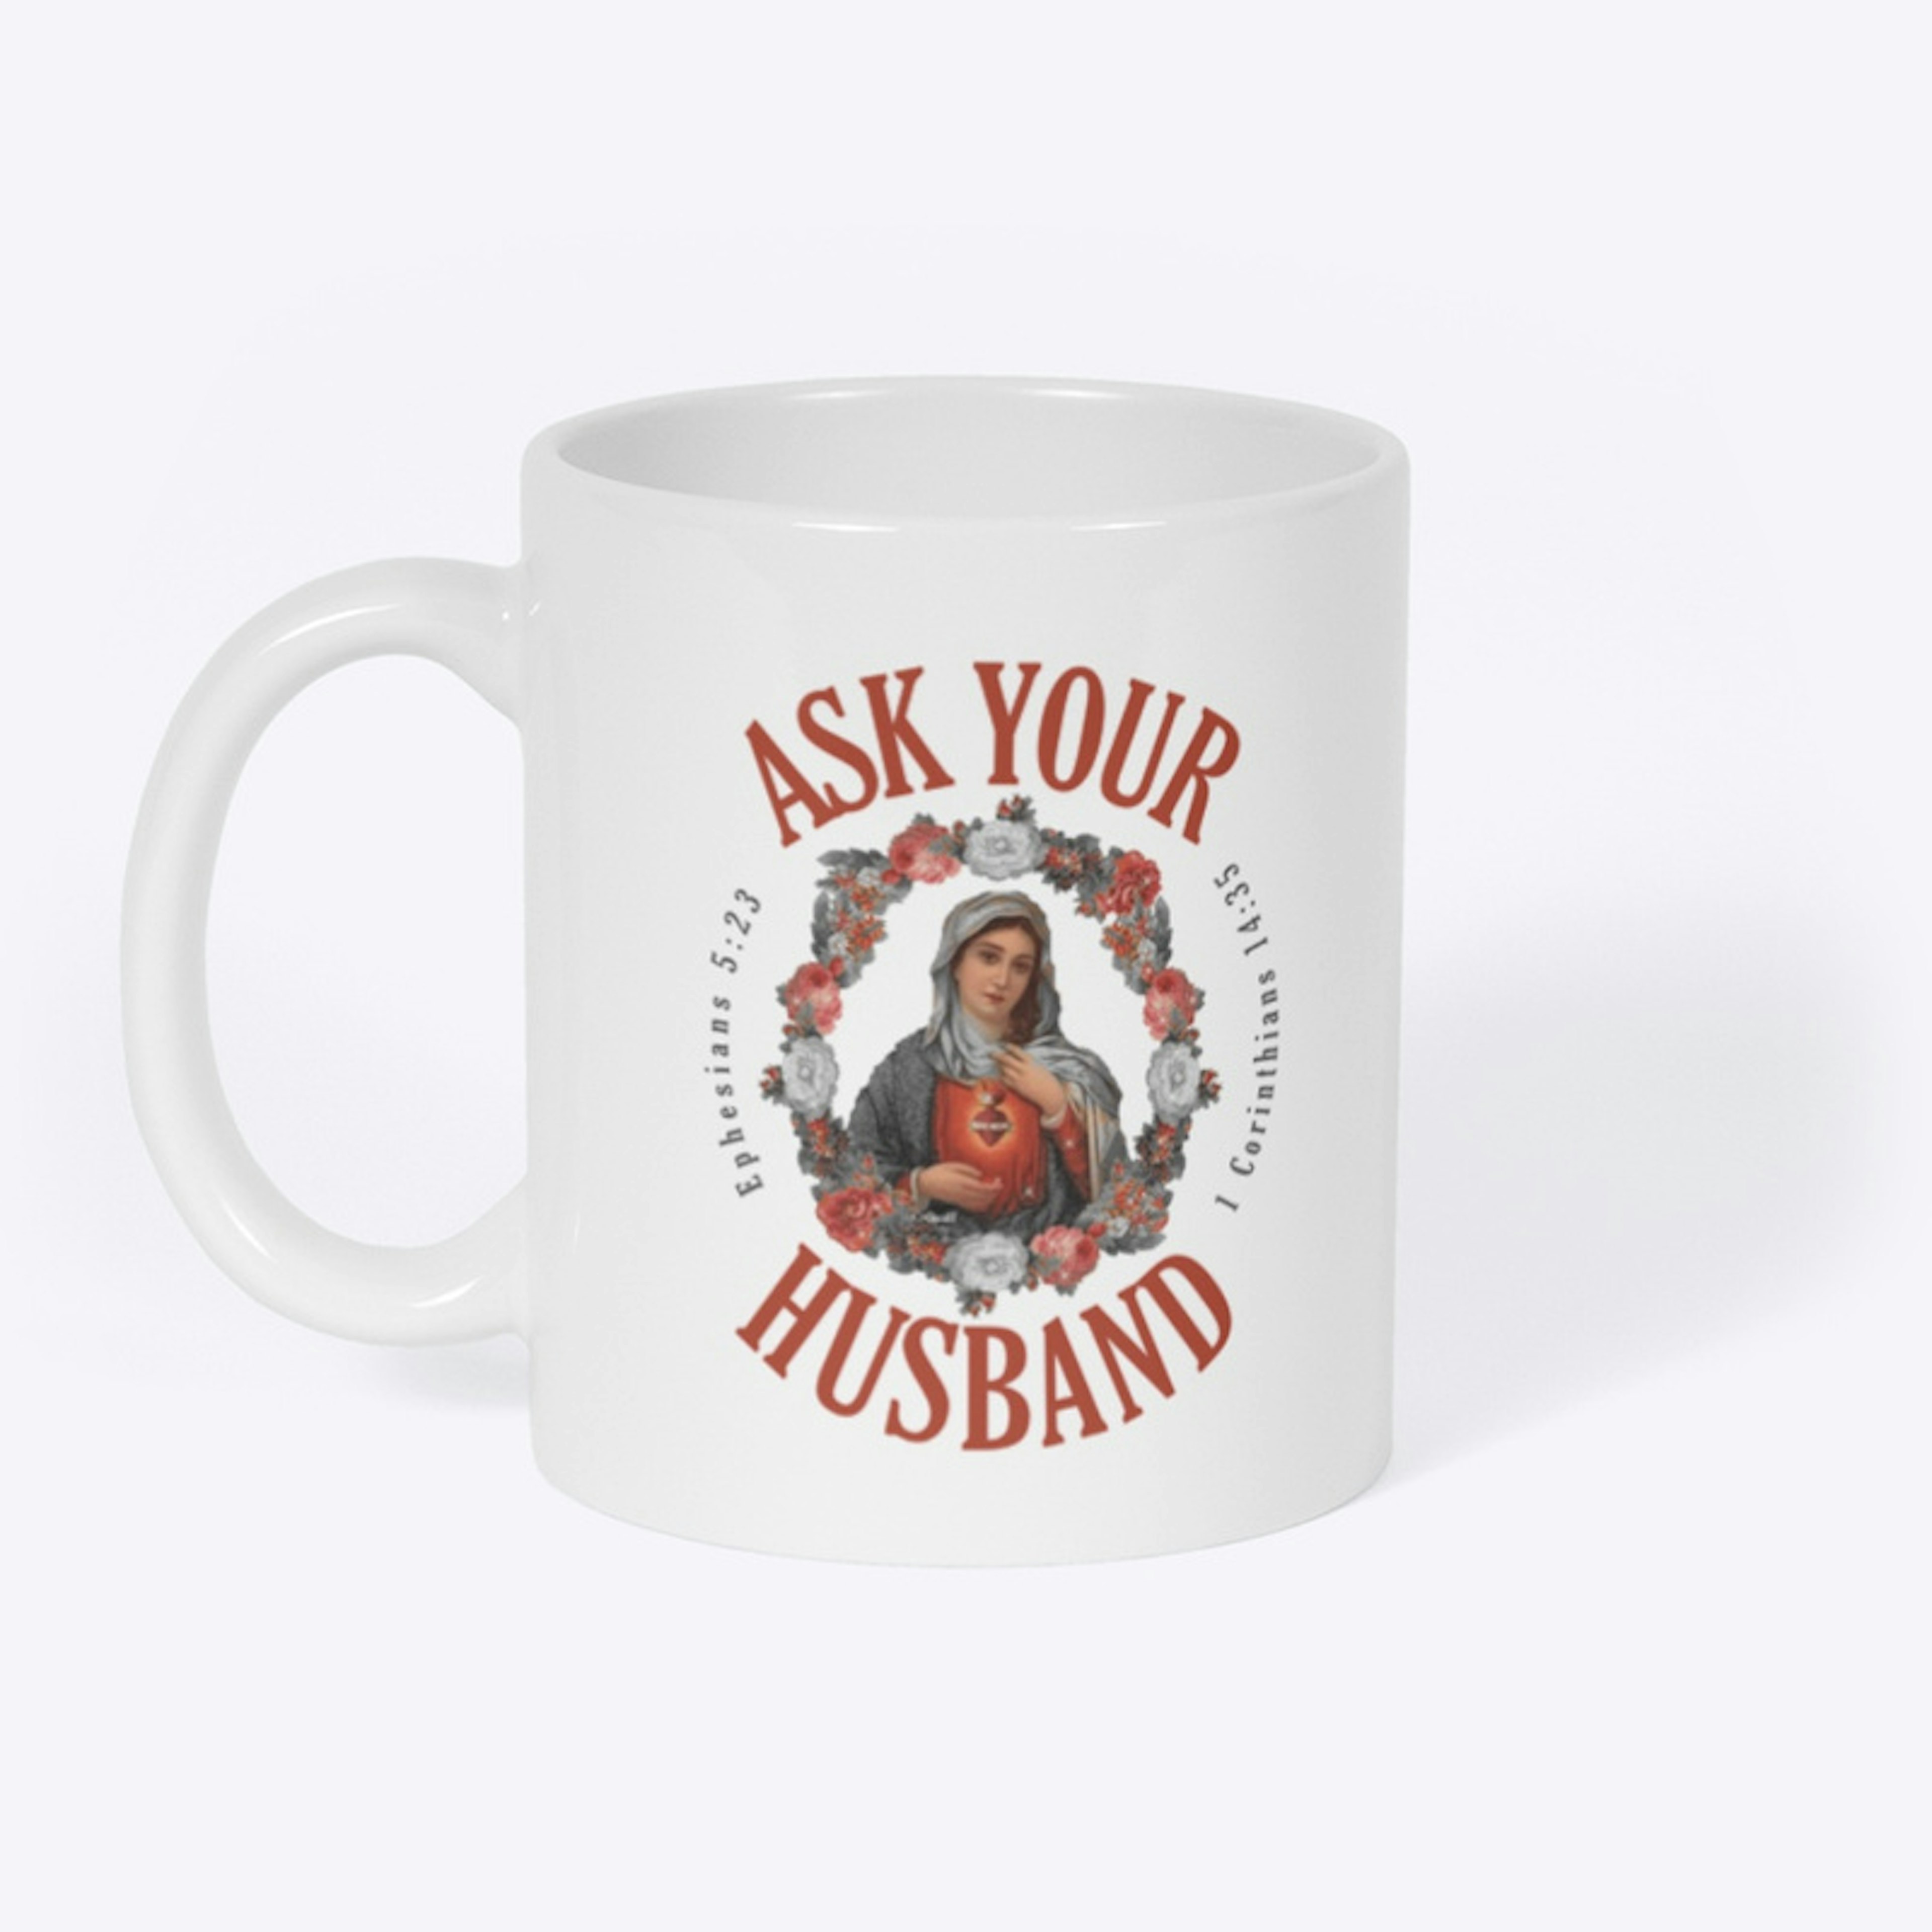 Ask Your Husband Mug